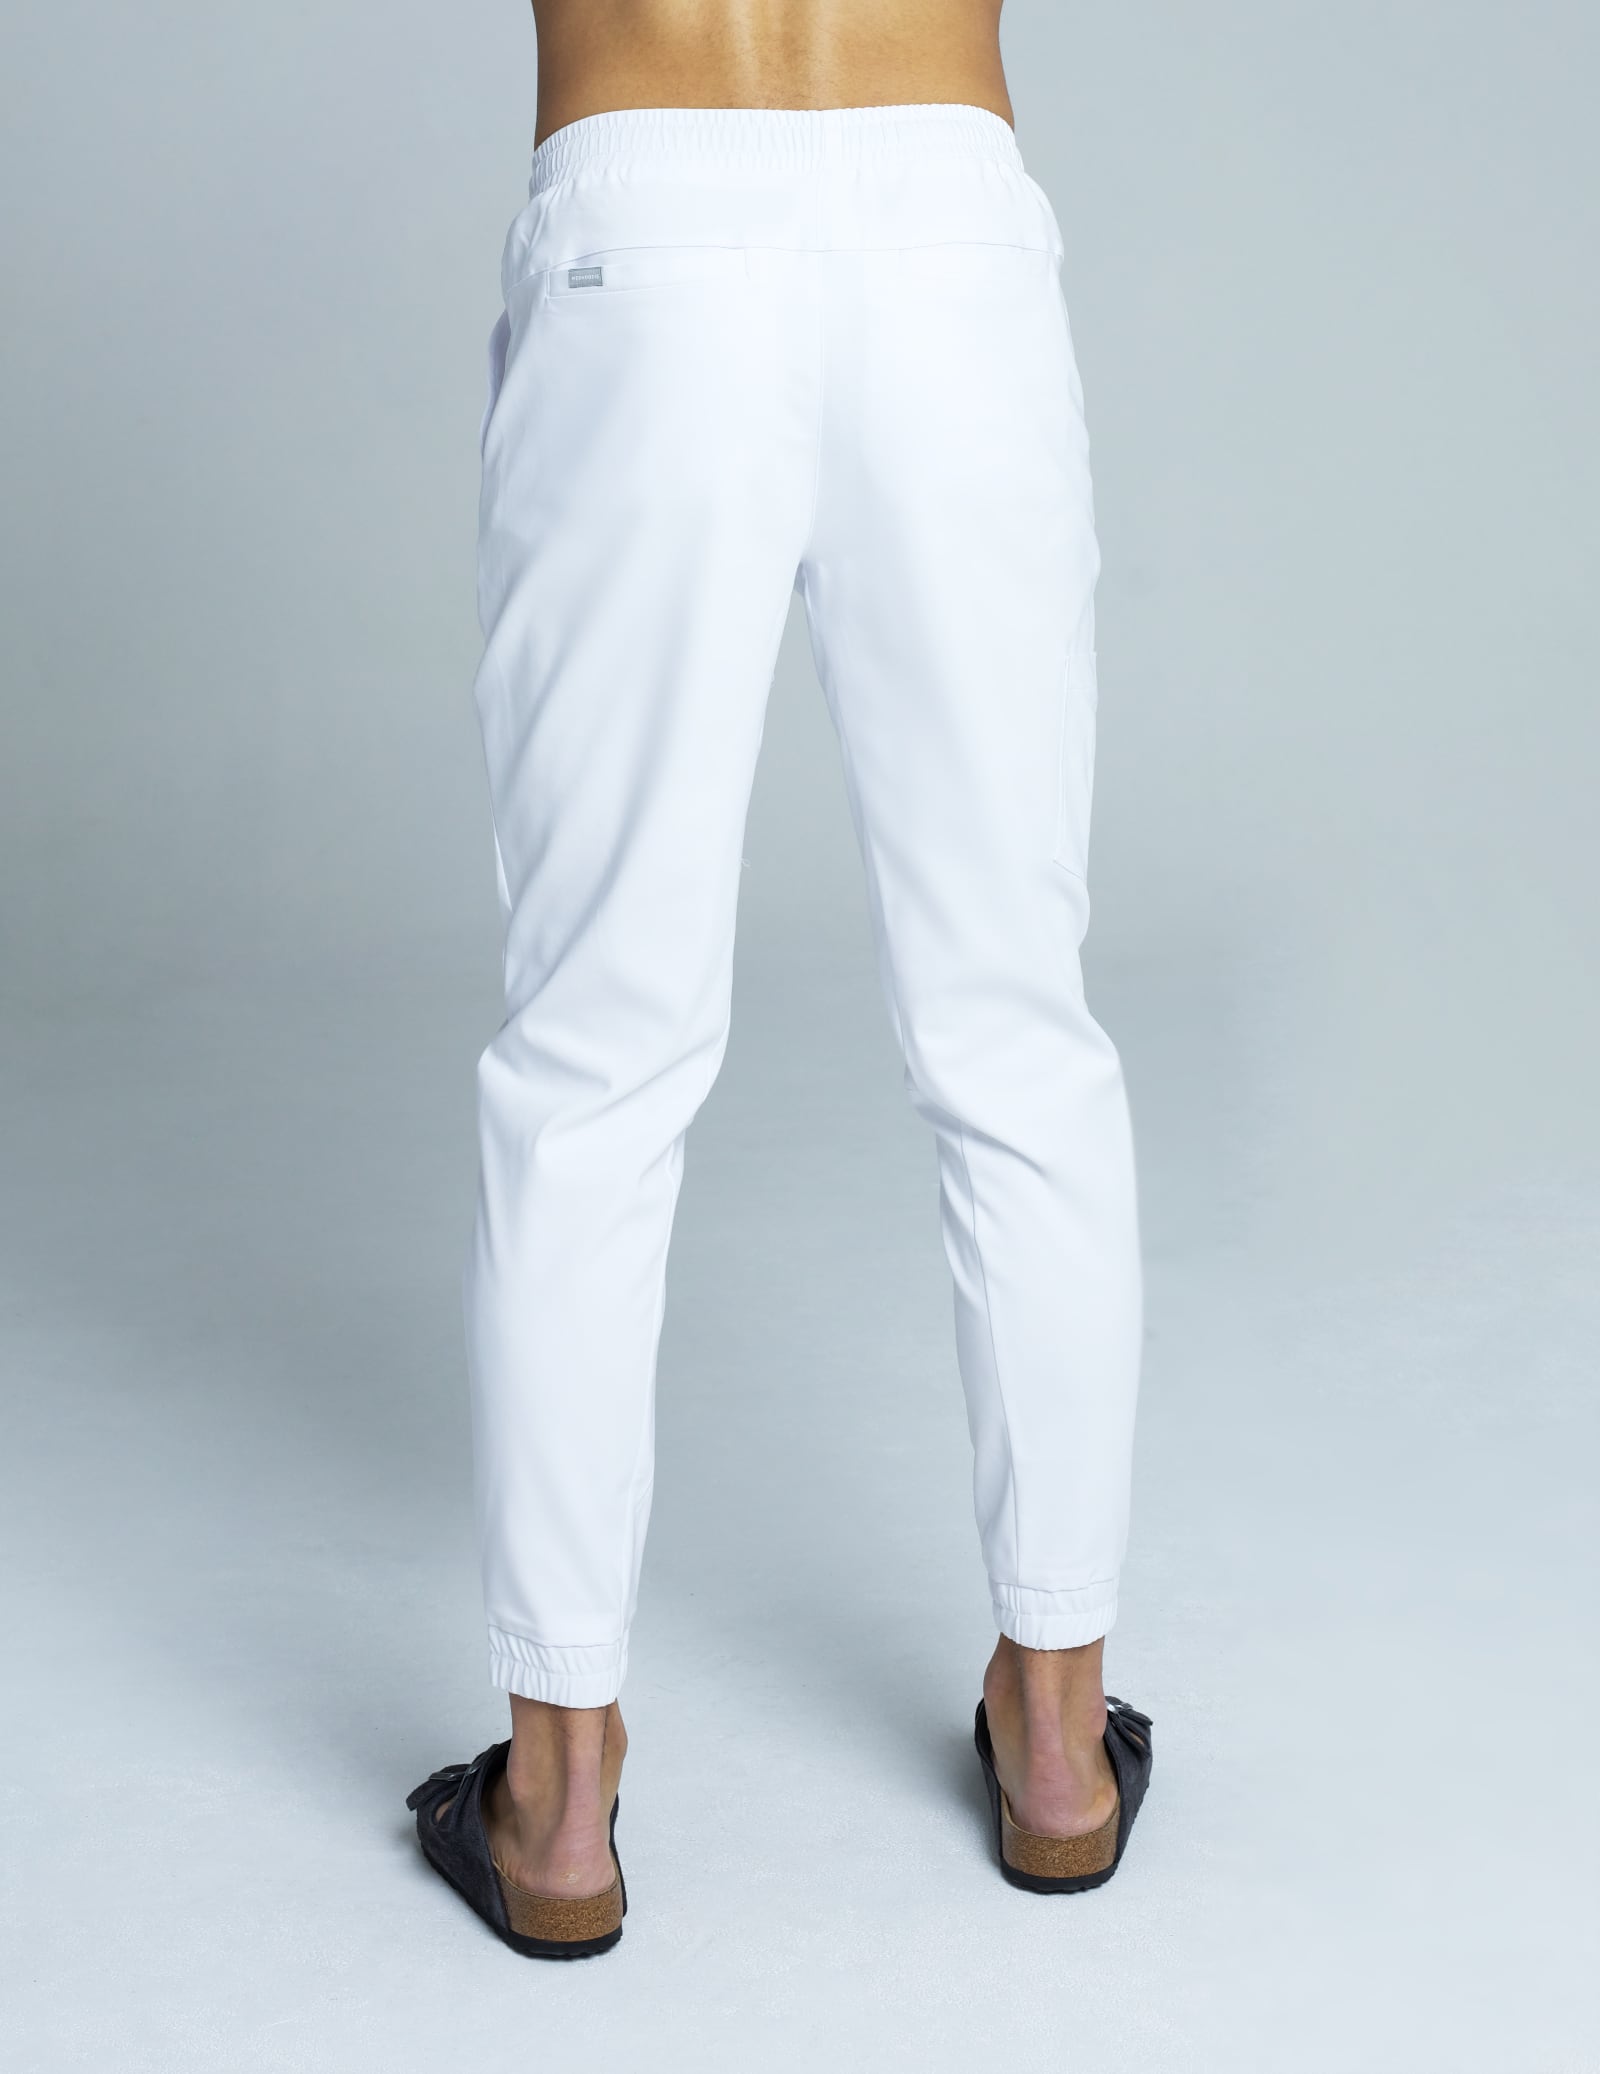 Men's Joggers Pants - White